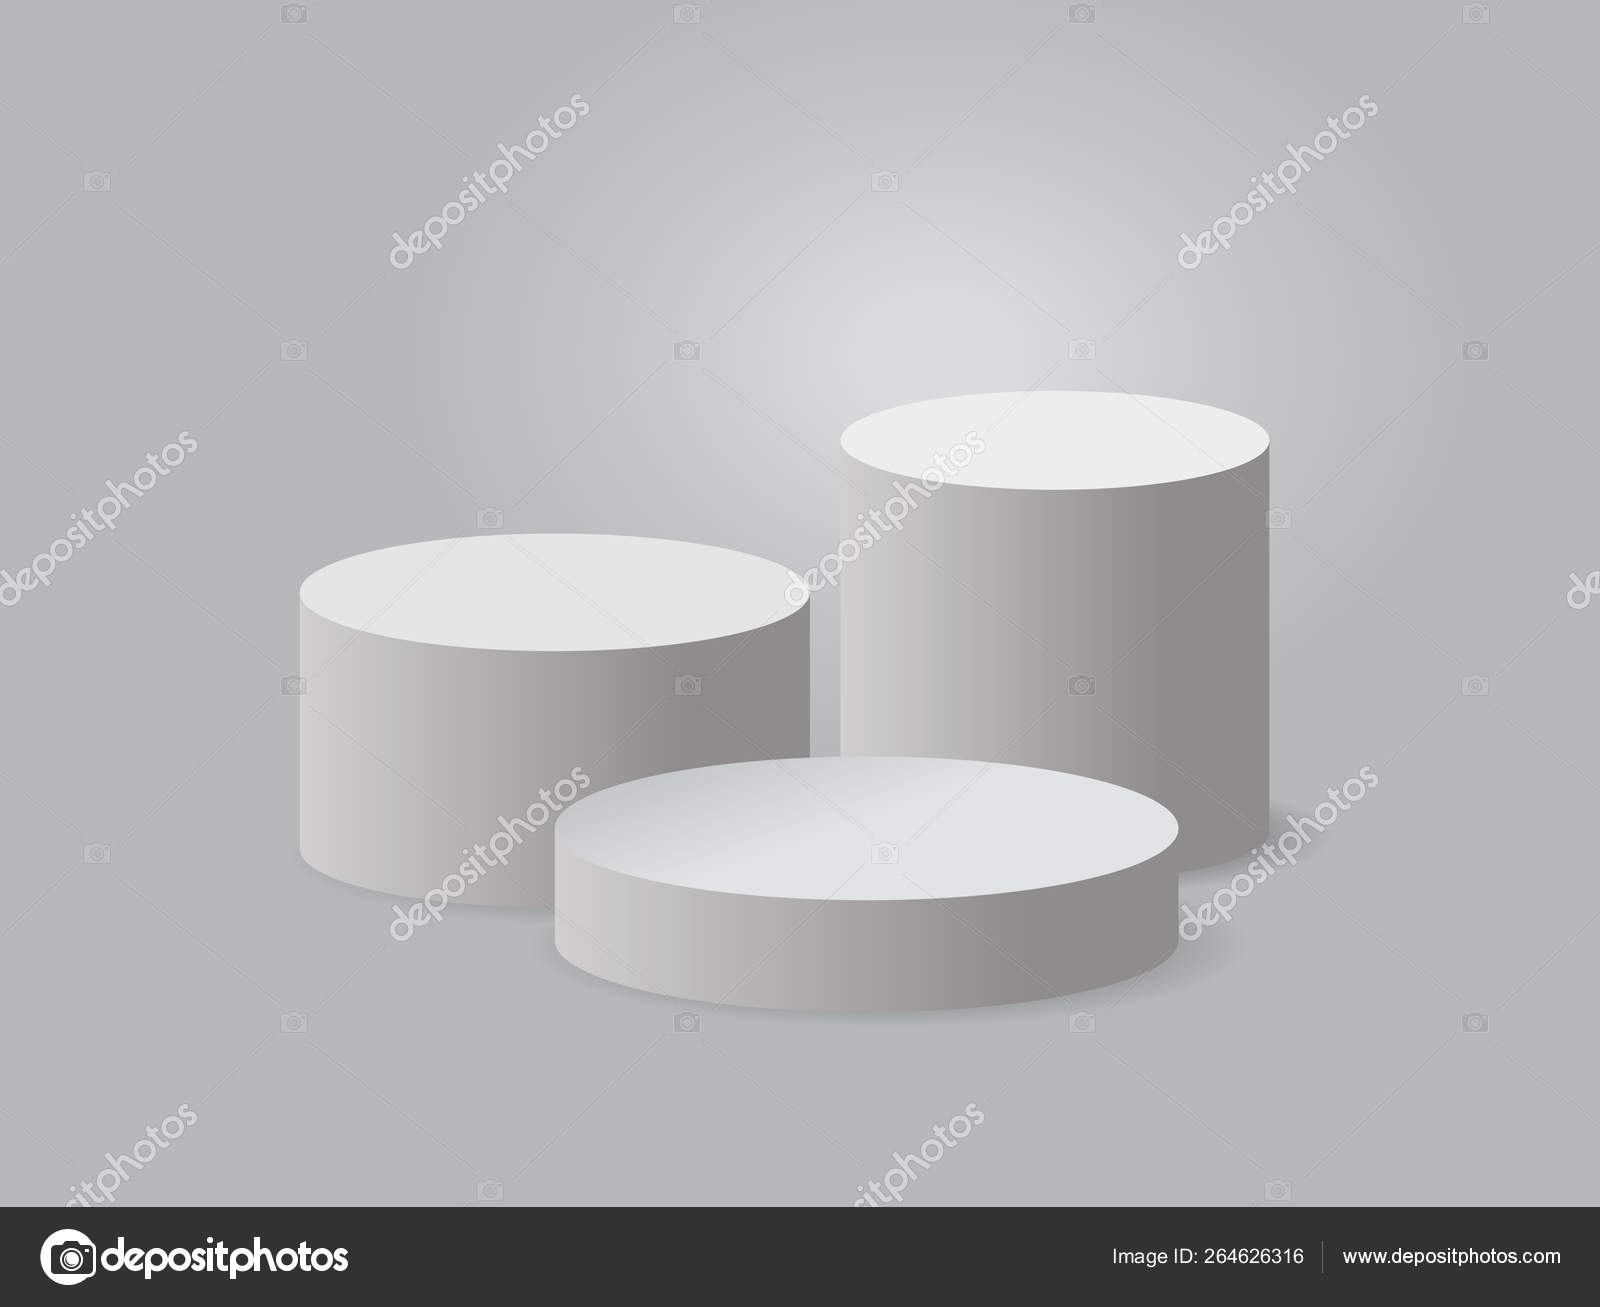 Pódio de apresentação do produto, estágio branco, pedestal branco vazio,  modelo em branco mockup. vetor — Vetor de Stock © ambassador80 #264626316